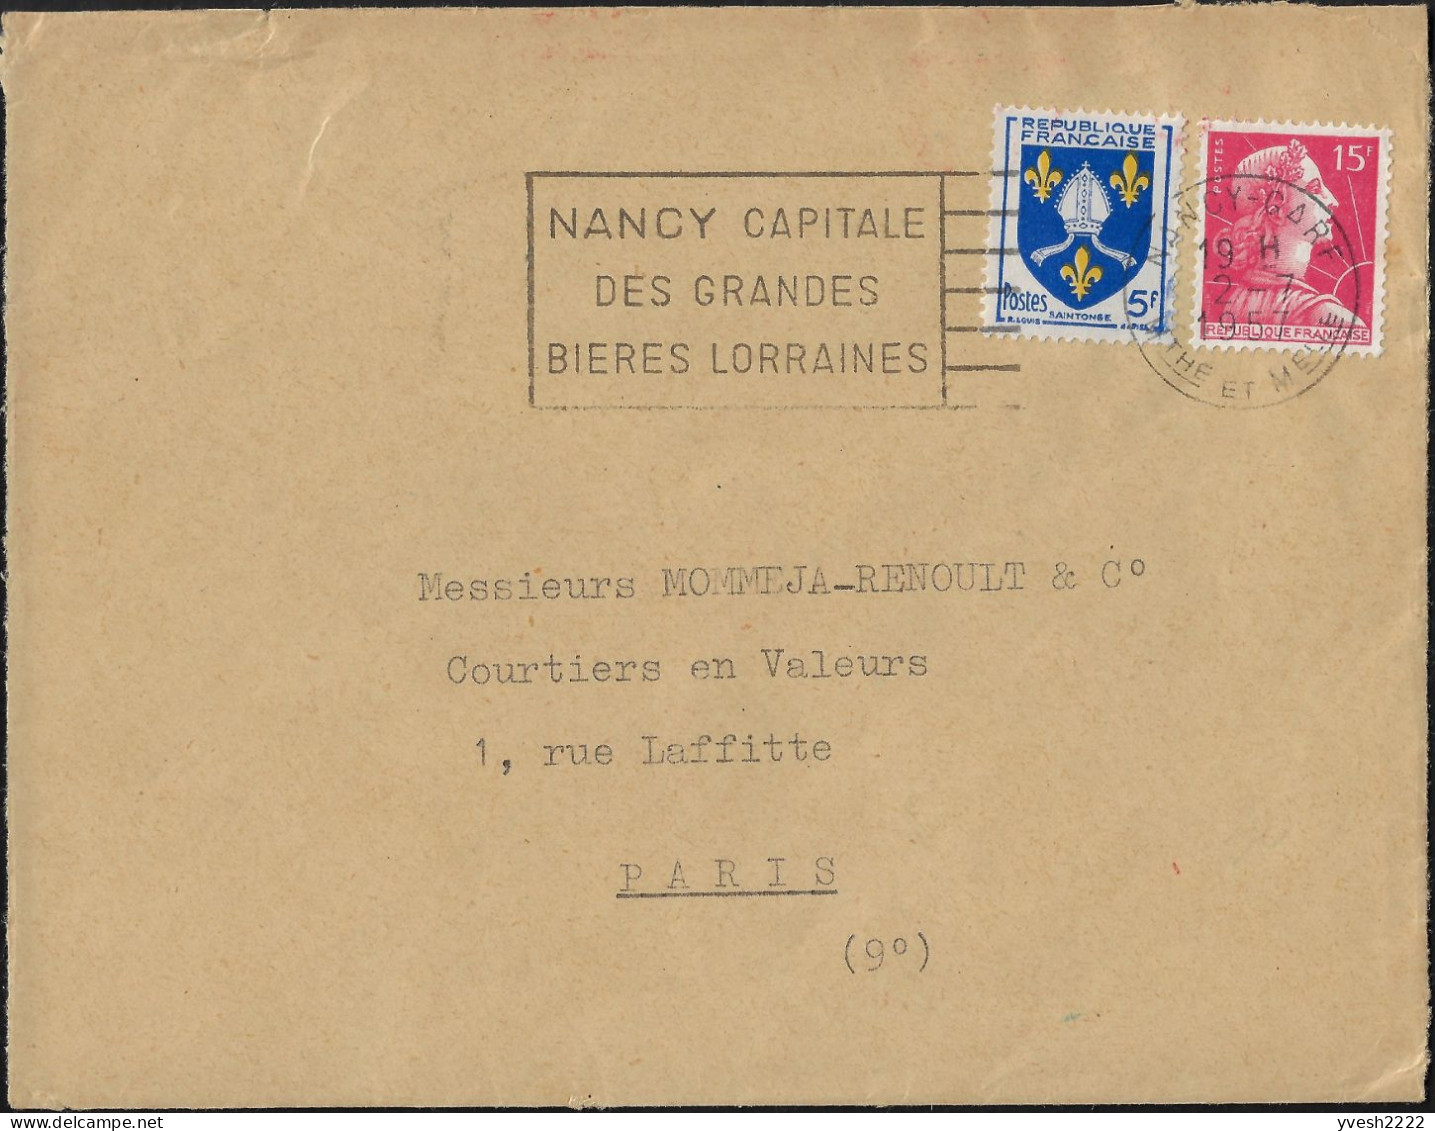 France 1959  Nancy, Capitale Des Grandes Bières Lorraines - Beers